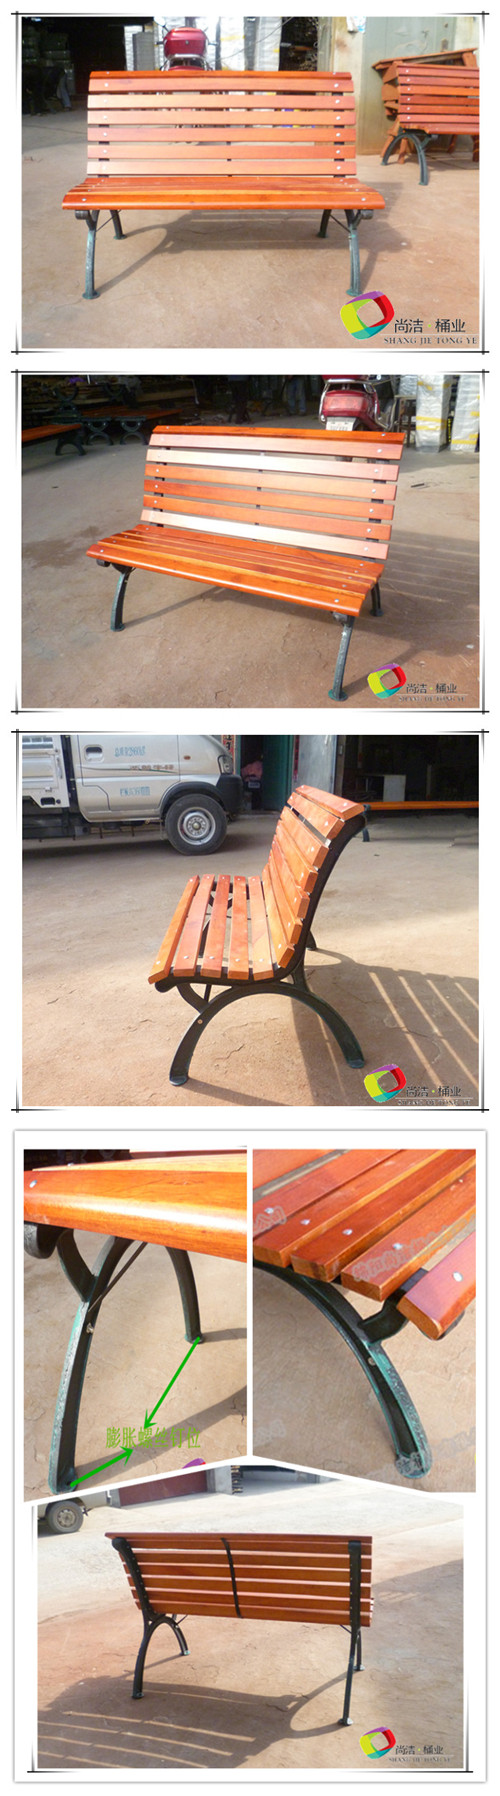 公园椅SJA-004的详细实物图片，包括正面、侧面、背面等